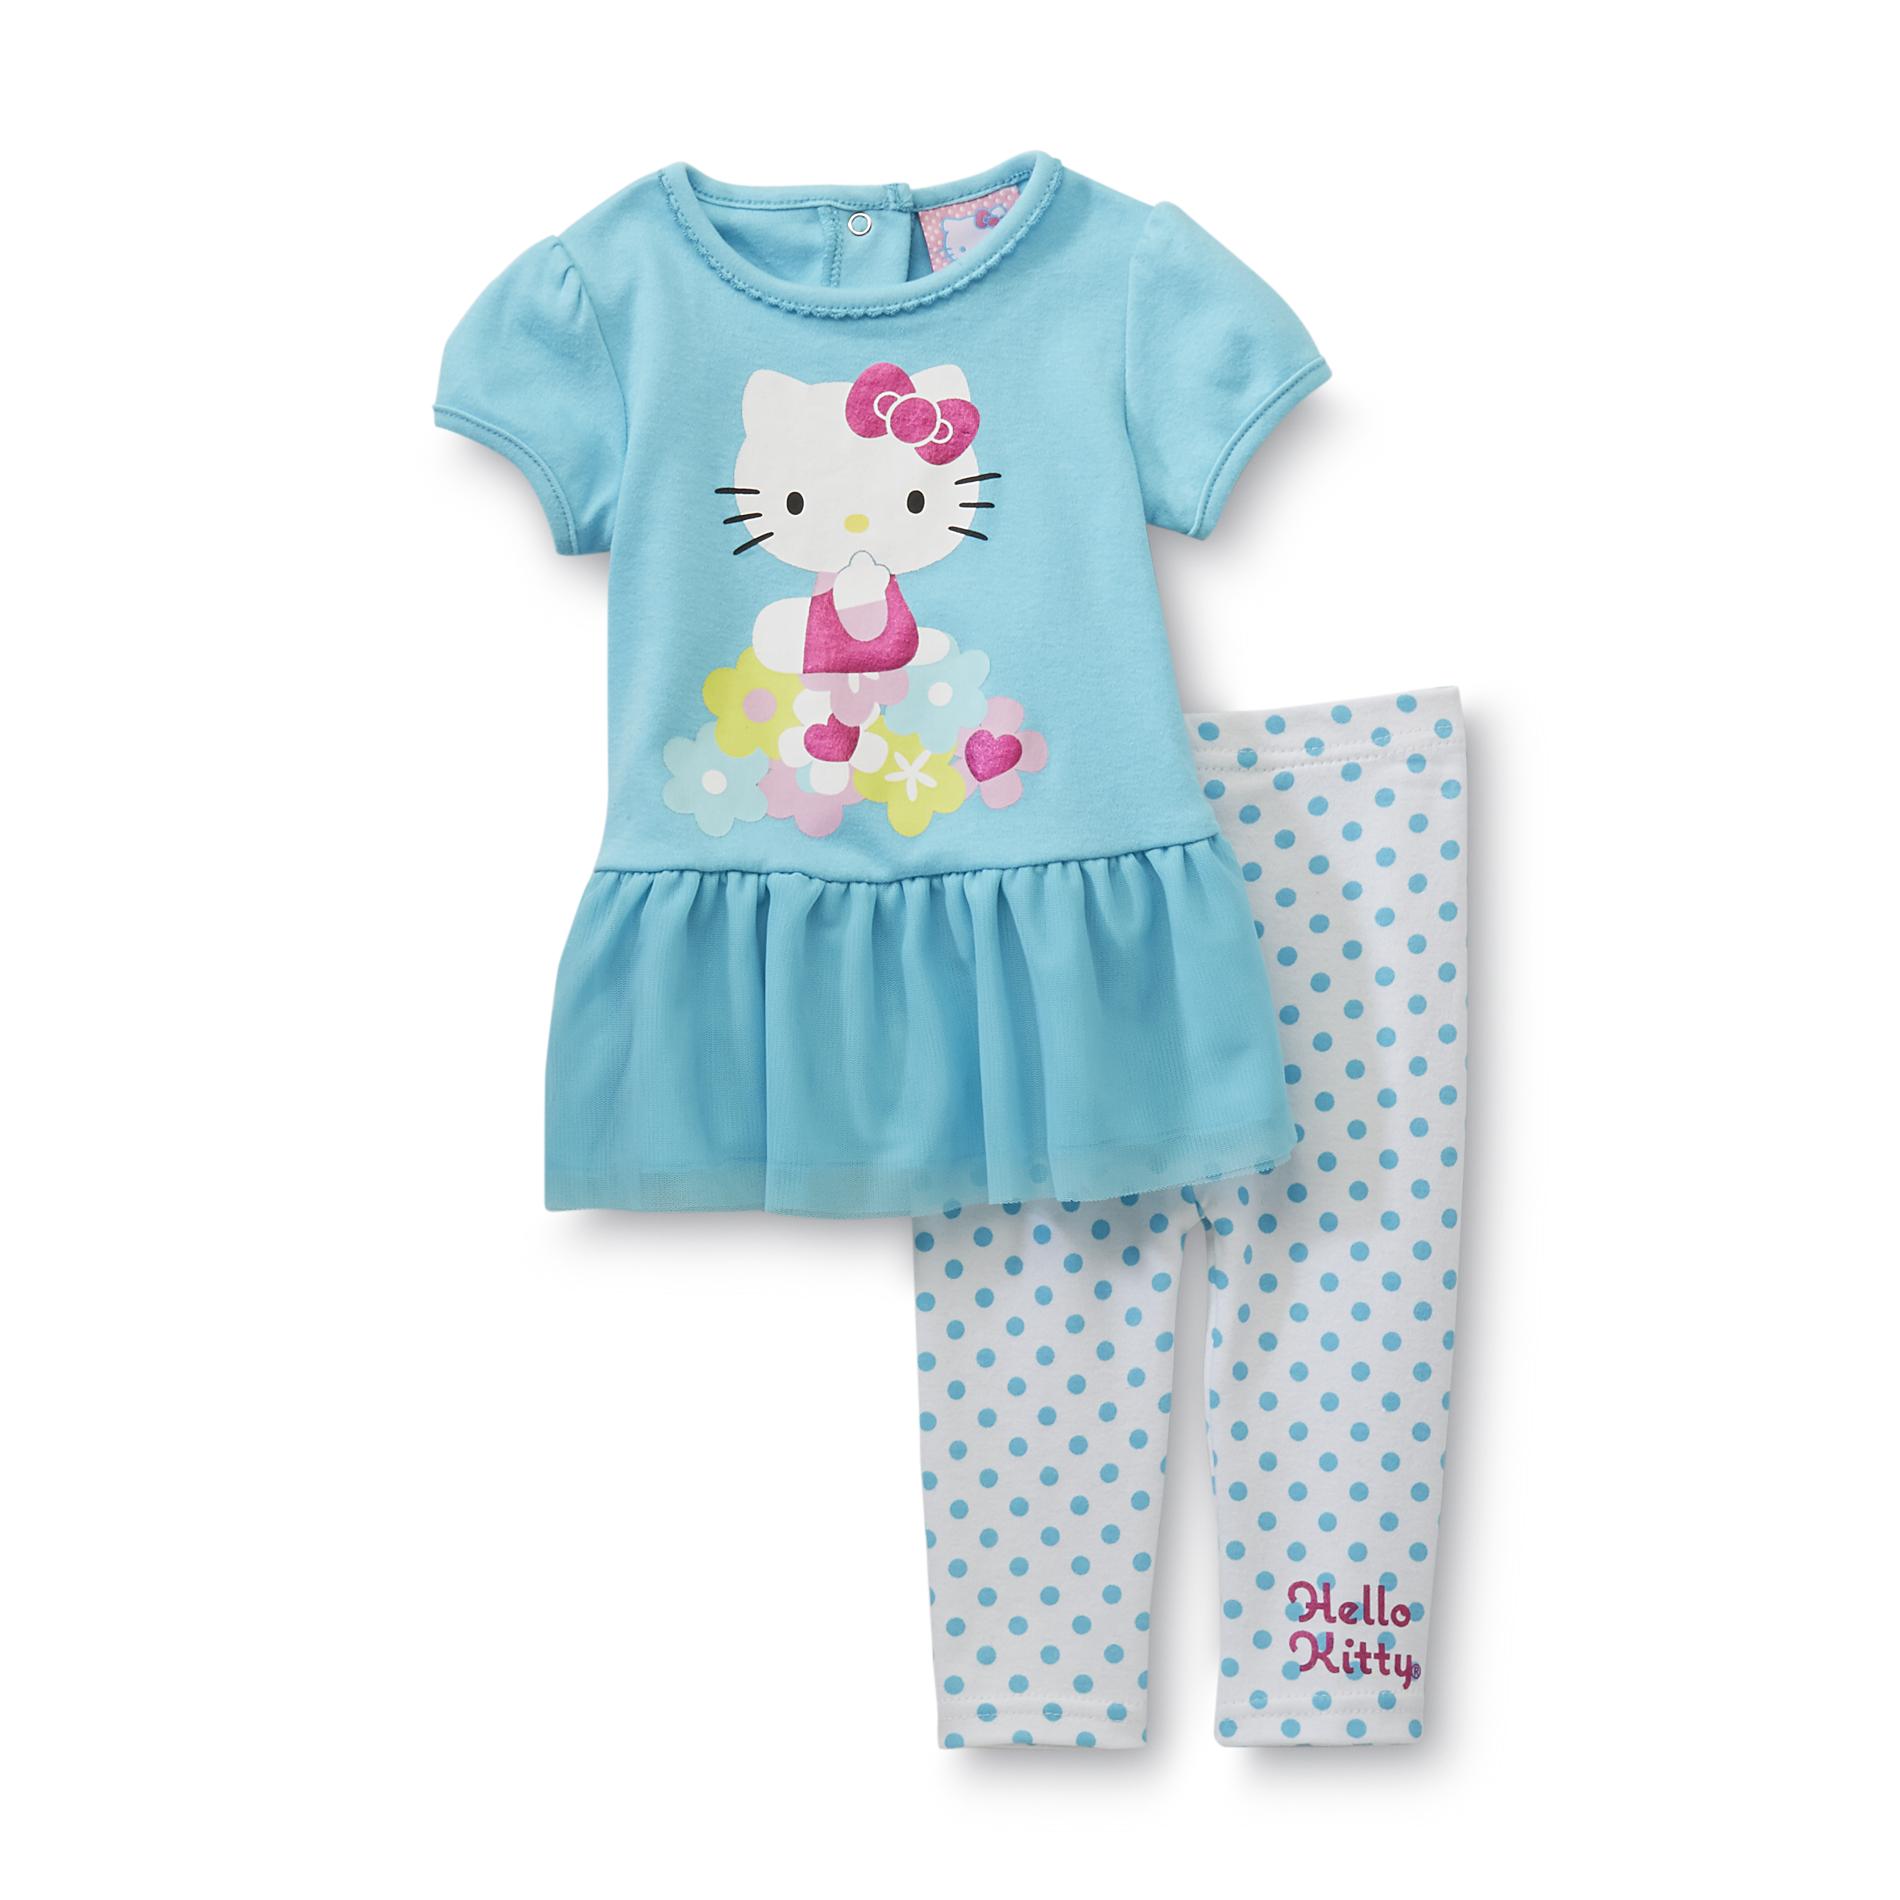 Hello Kitty Newborn & Infant Girl's Dress & Leggings - Polka Dot